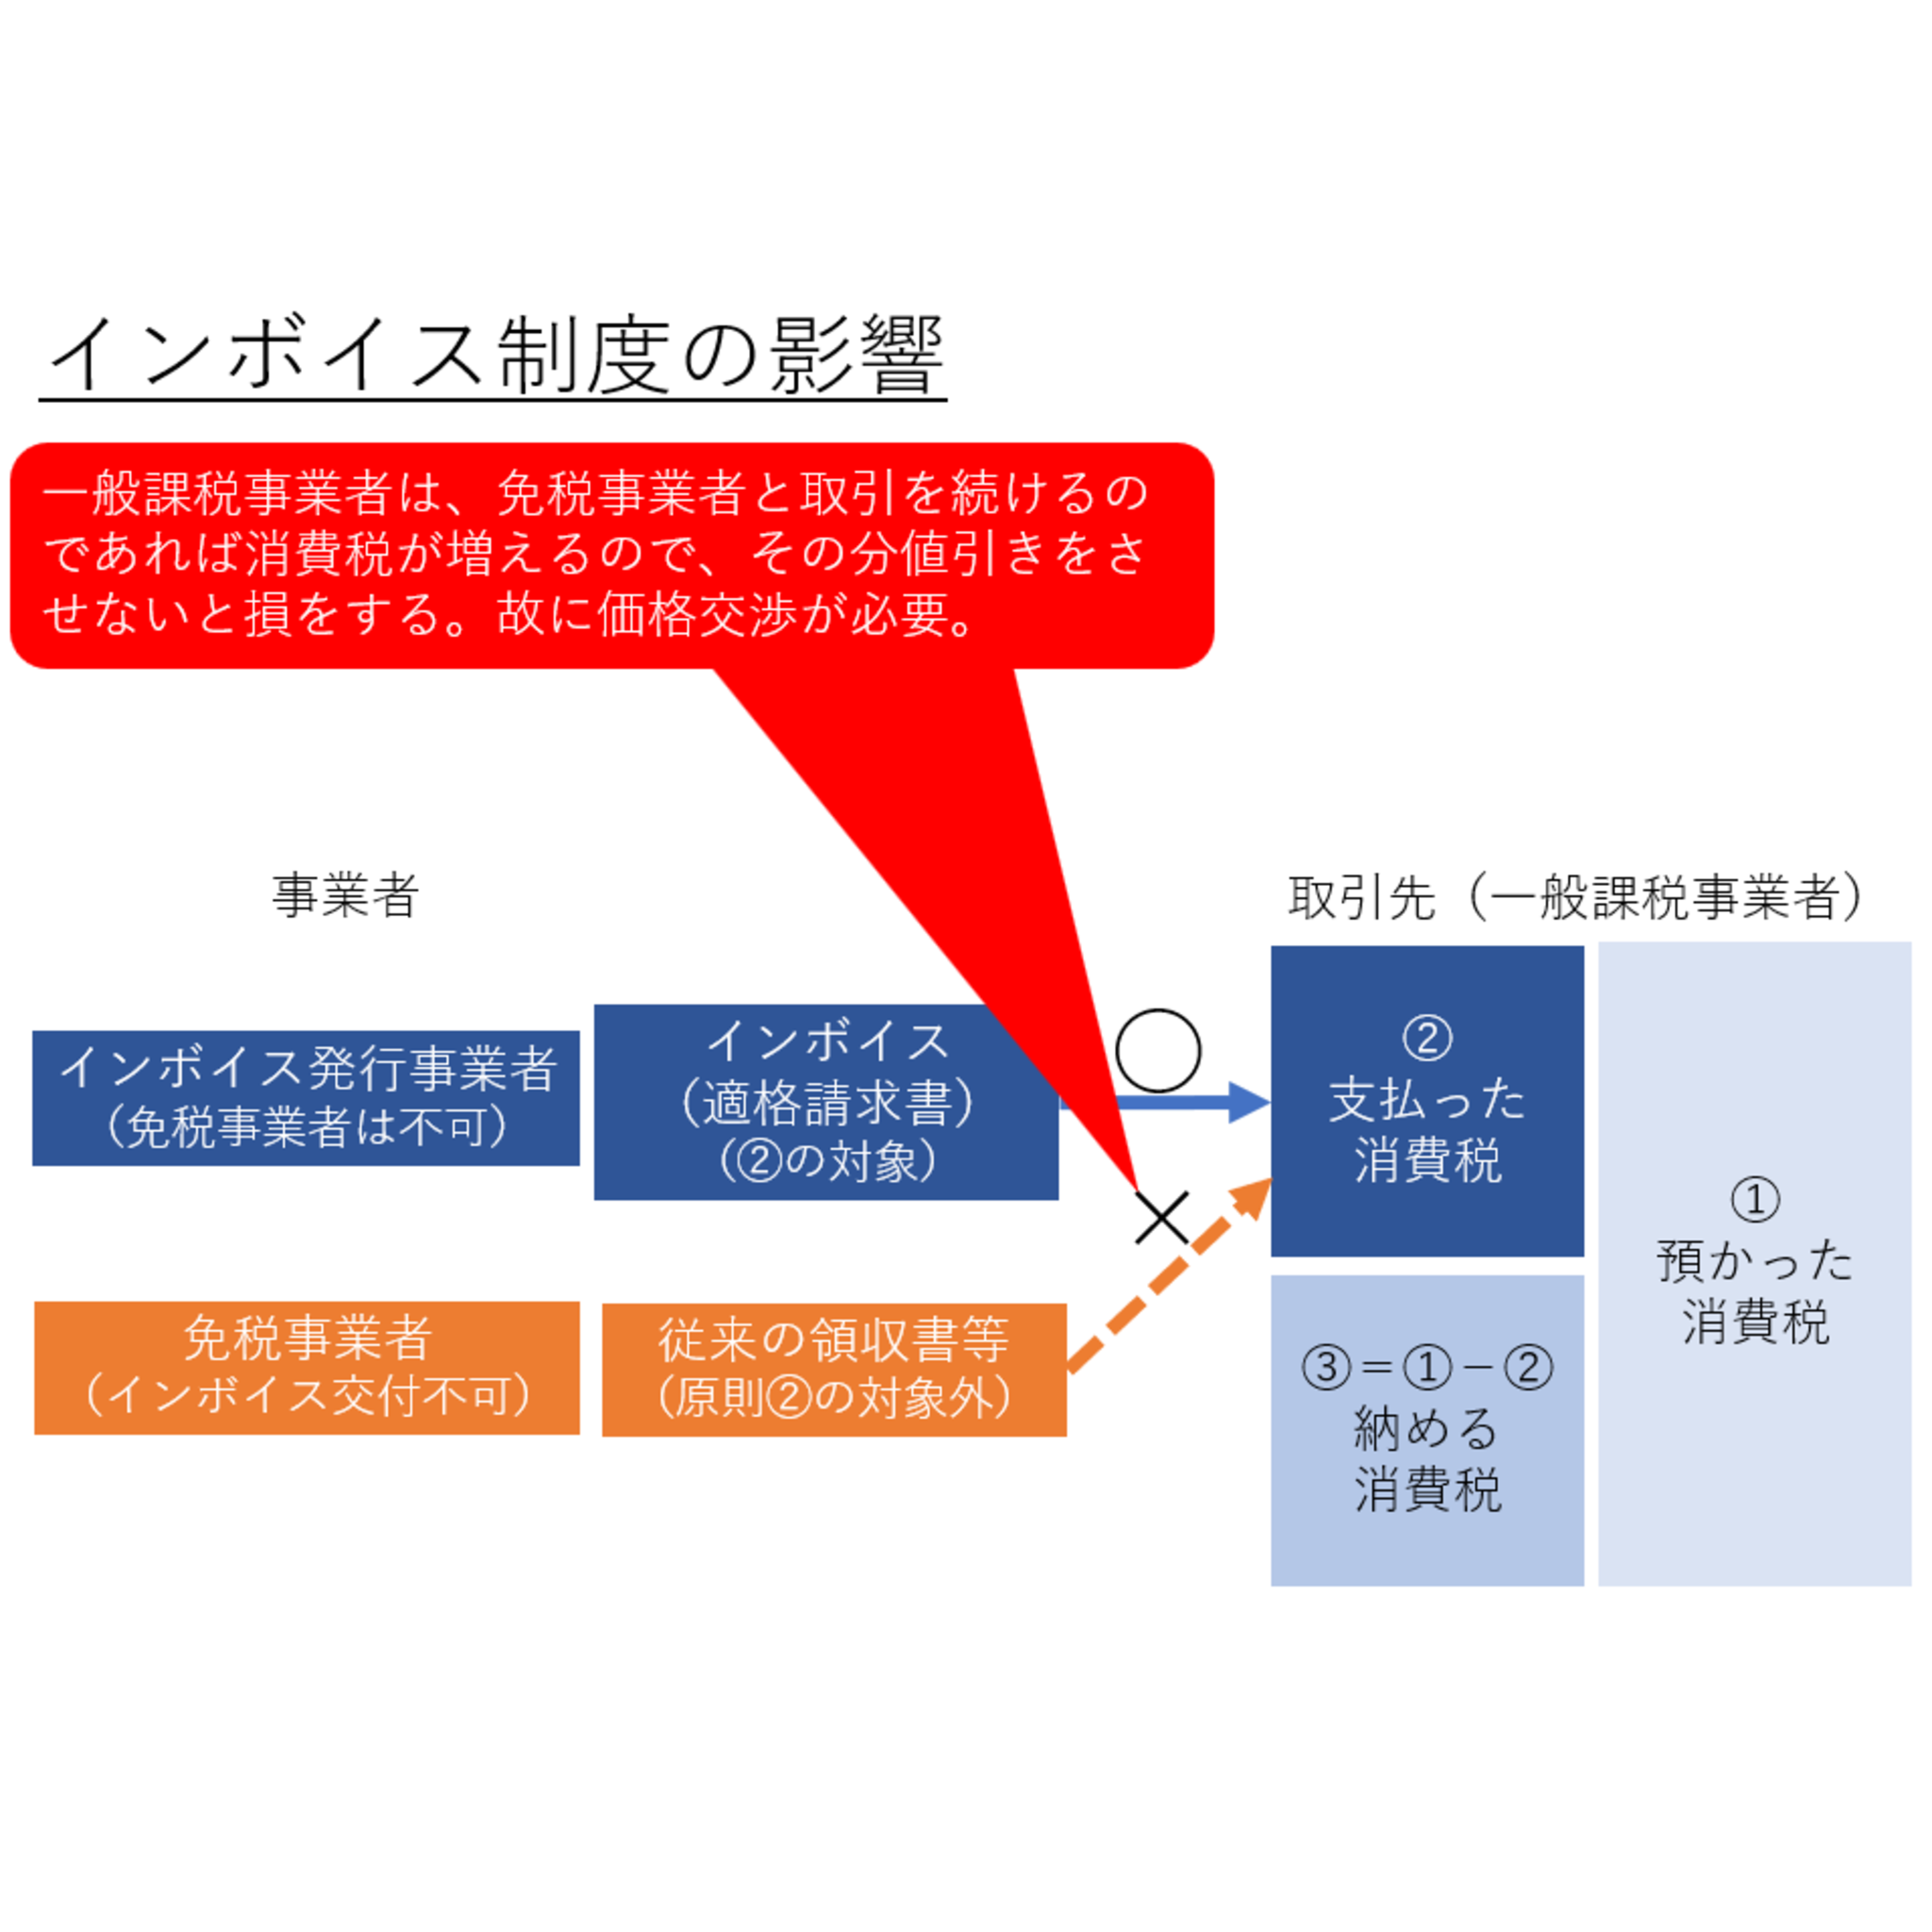 小松崎哲史税理士事務所からのお知らせ(インボイス制度の影響)に関する写真